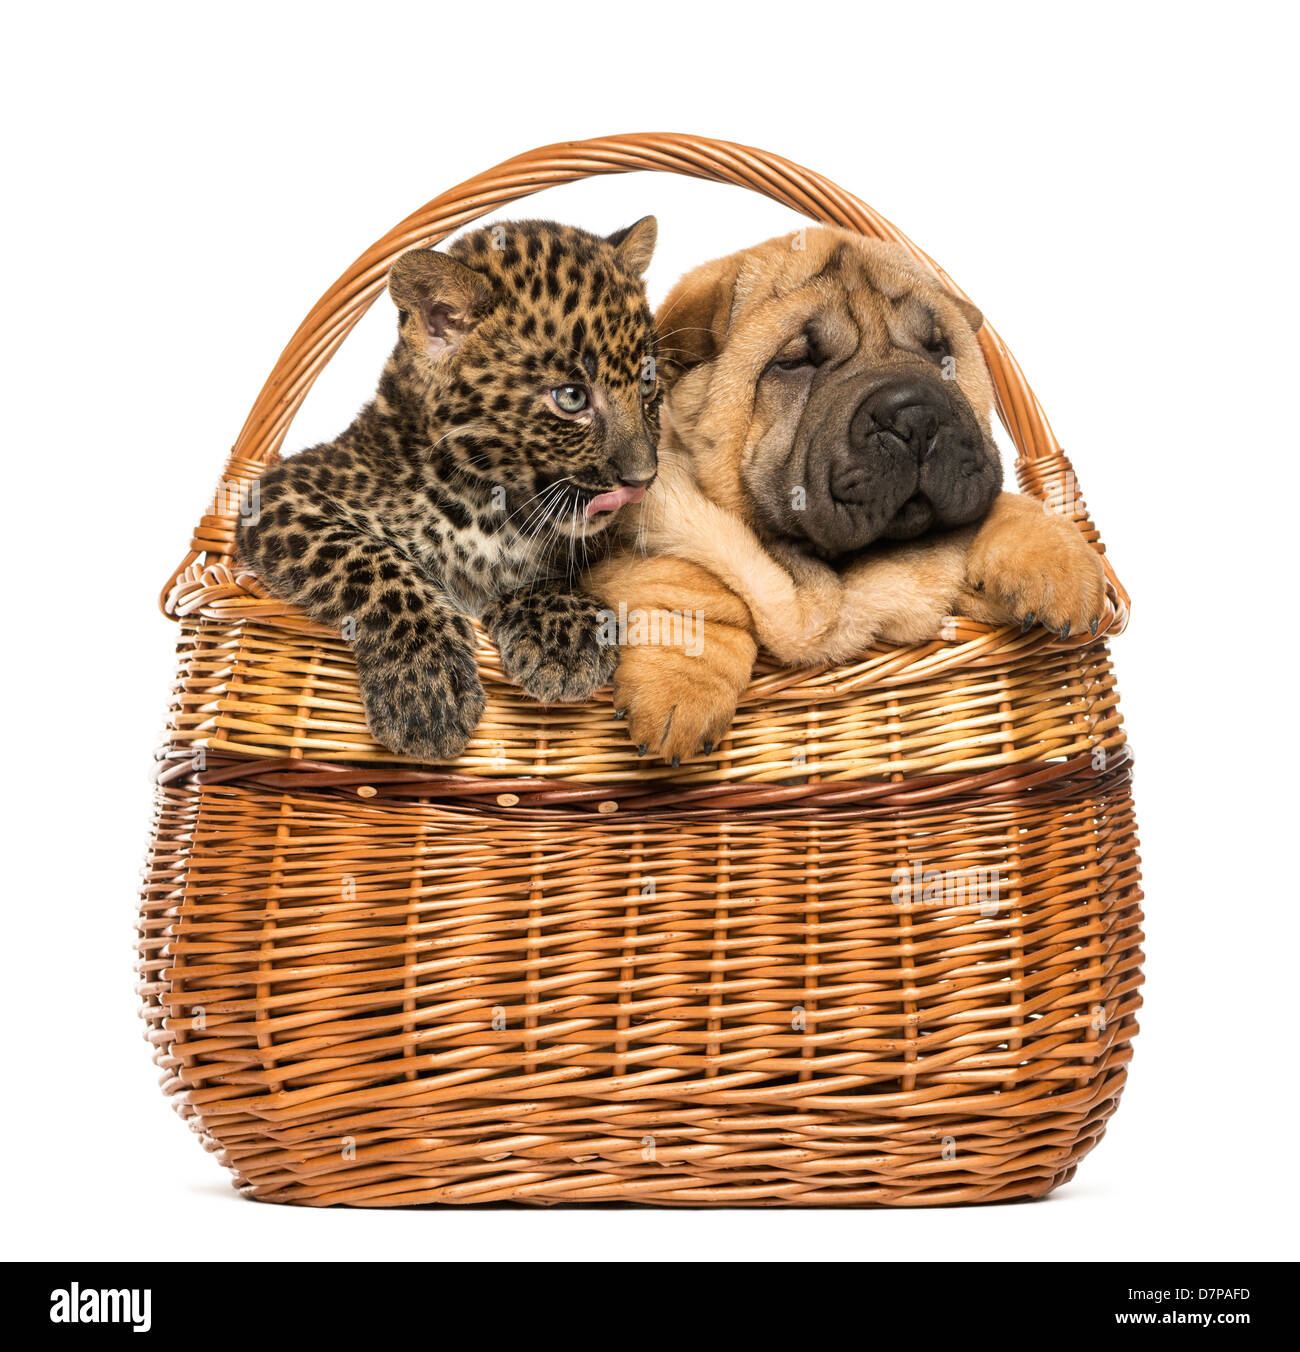 Shar Pei cucciolo e Spotted Leopard cub in un cesto di vimini contro uno sfondo bianco Foto Stock